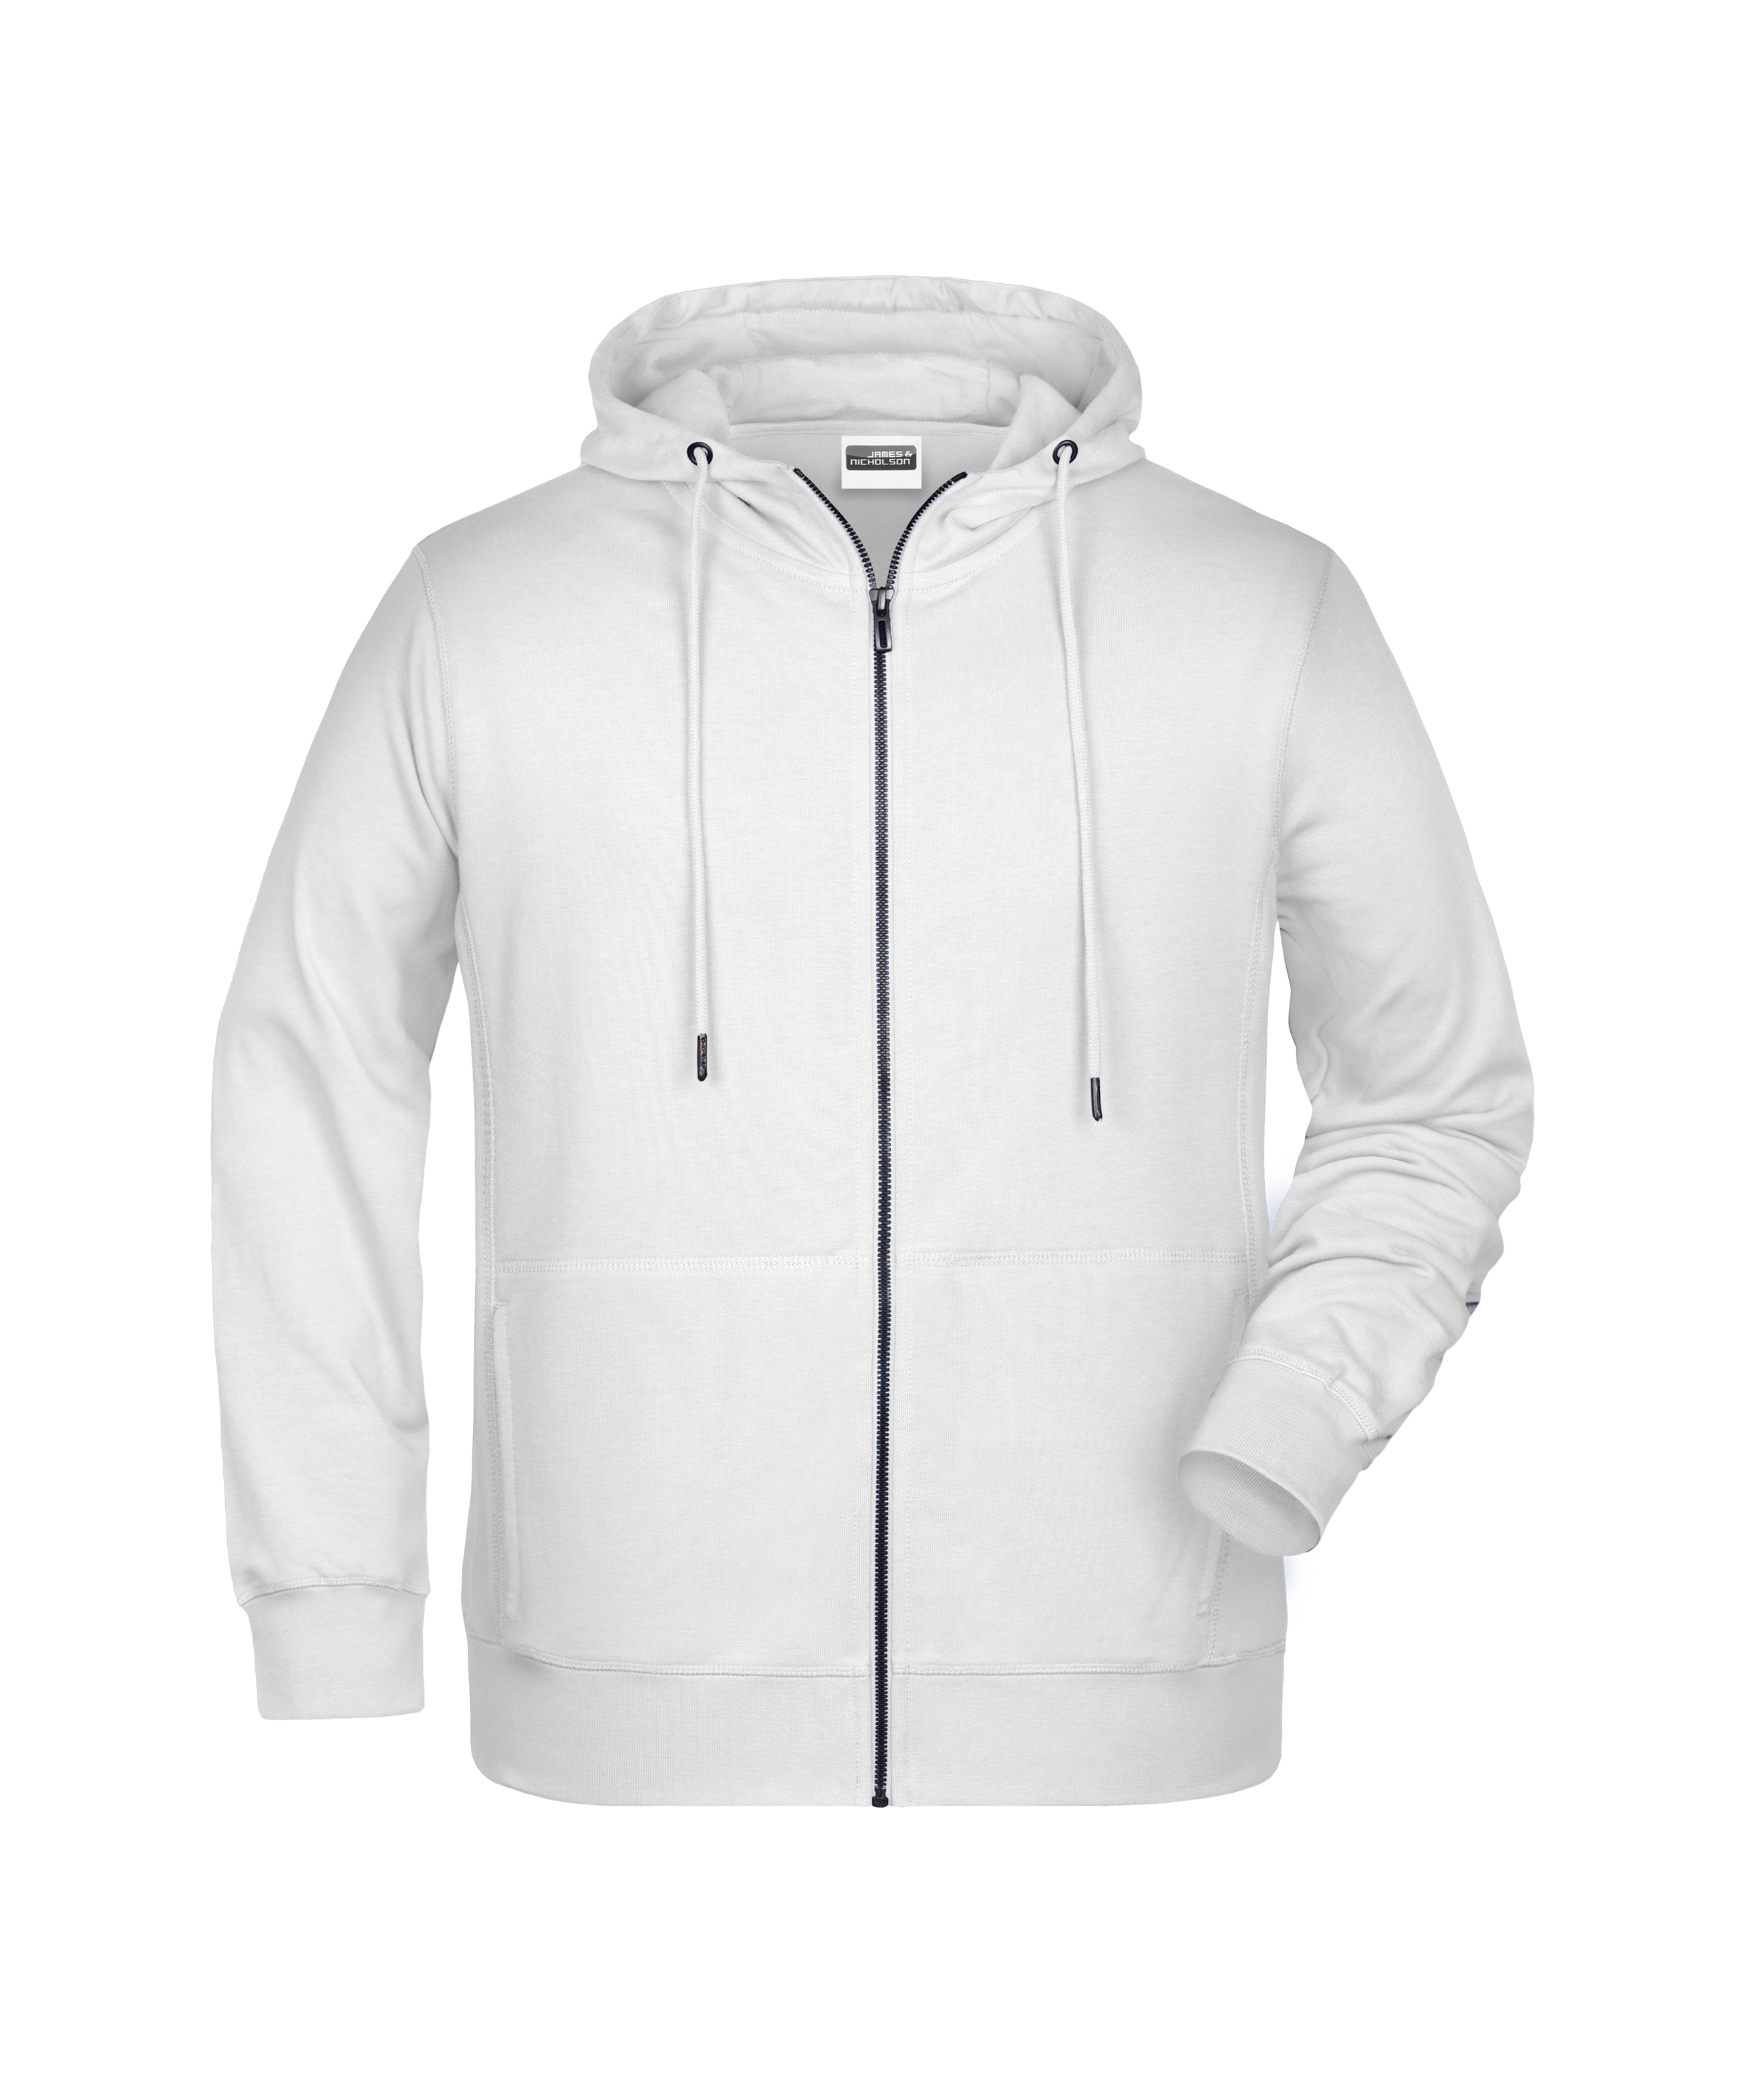 Men's Zip Hoody 8026 Sweat-Jacke mit Kapuze und Reißverschluss